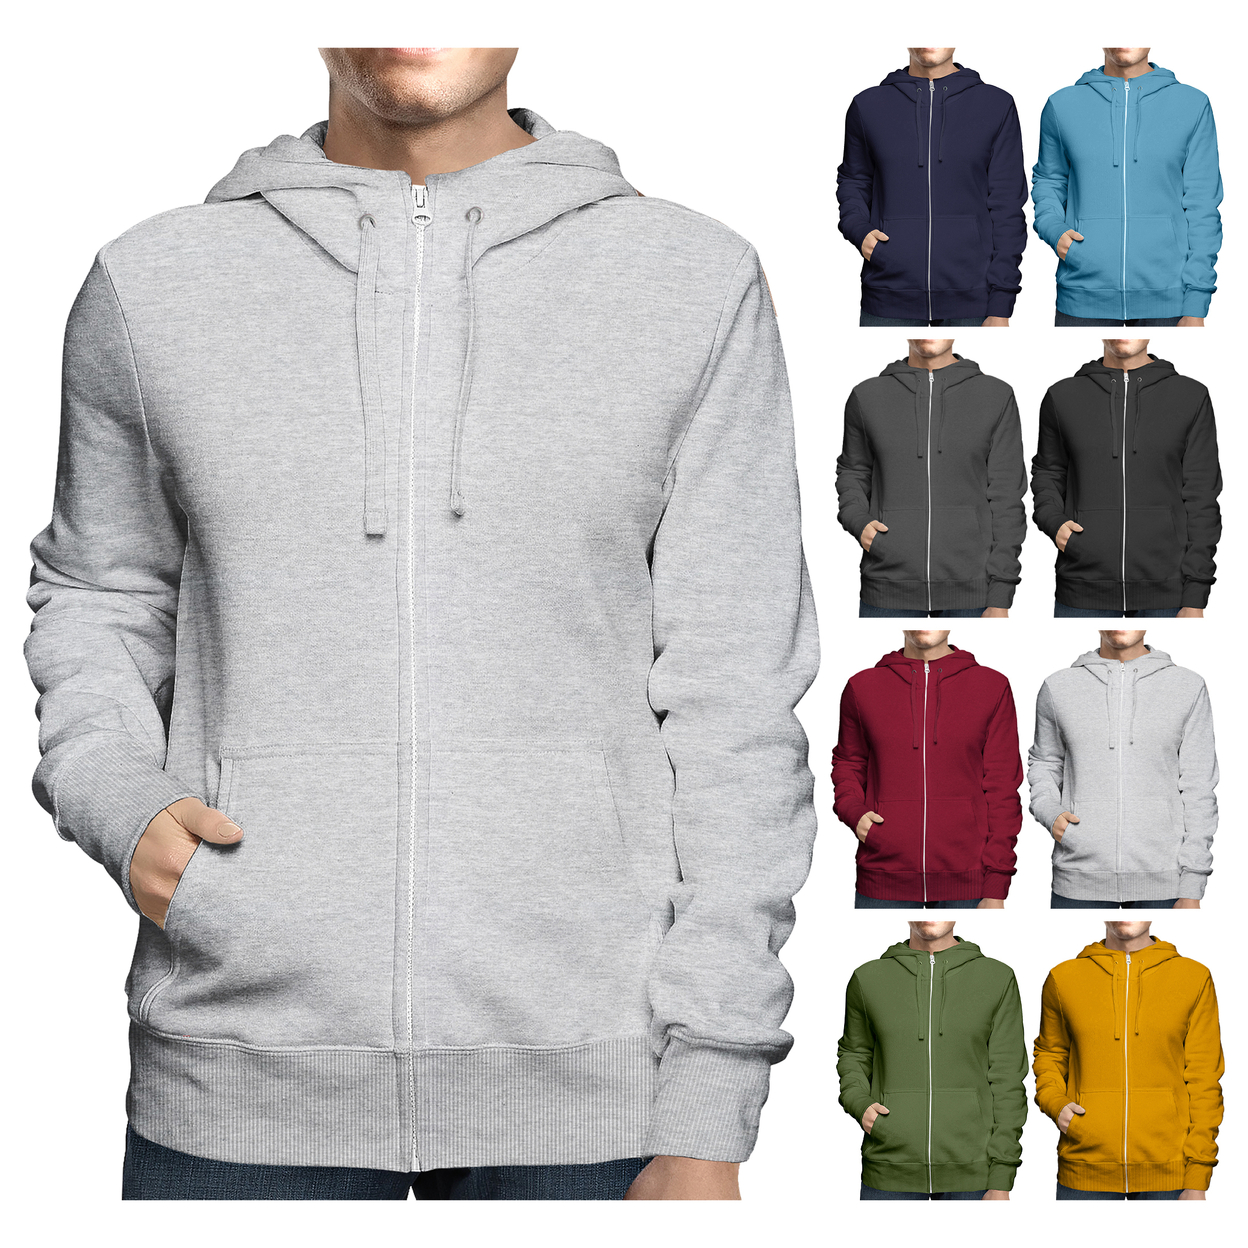 2-Pack: Men's Winter Warm Soft Full Zip-Up Fleece Lined Hoodie Sweatshirt - Black & Grey, Xx-large